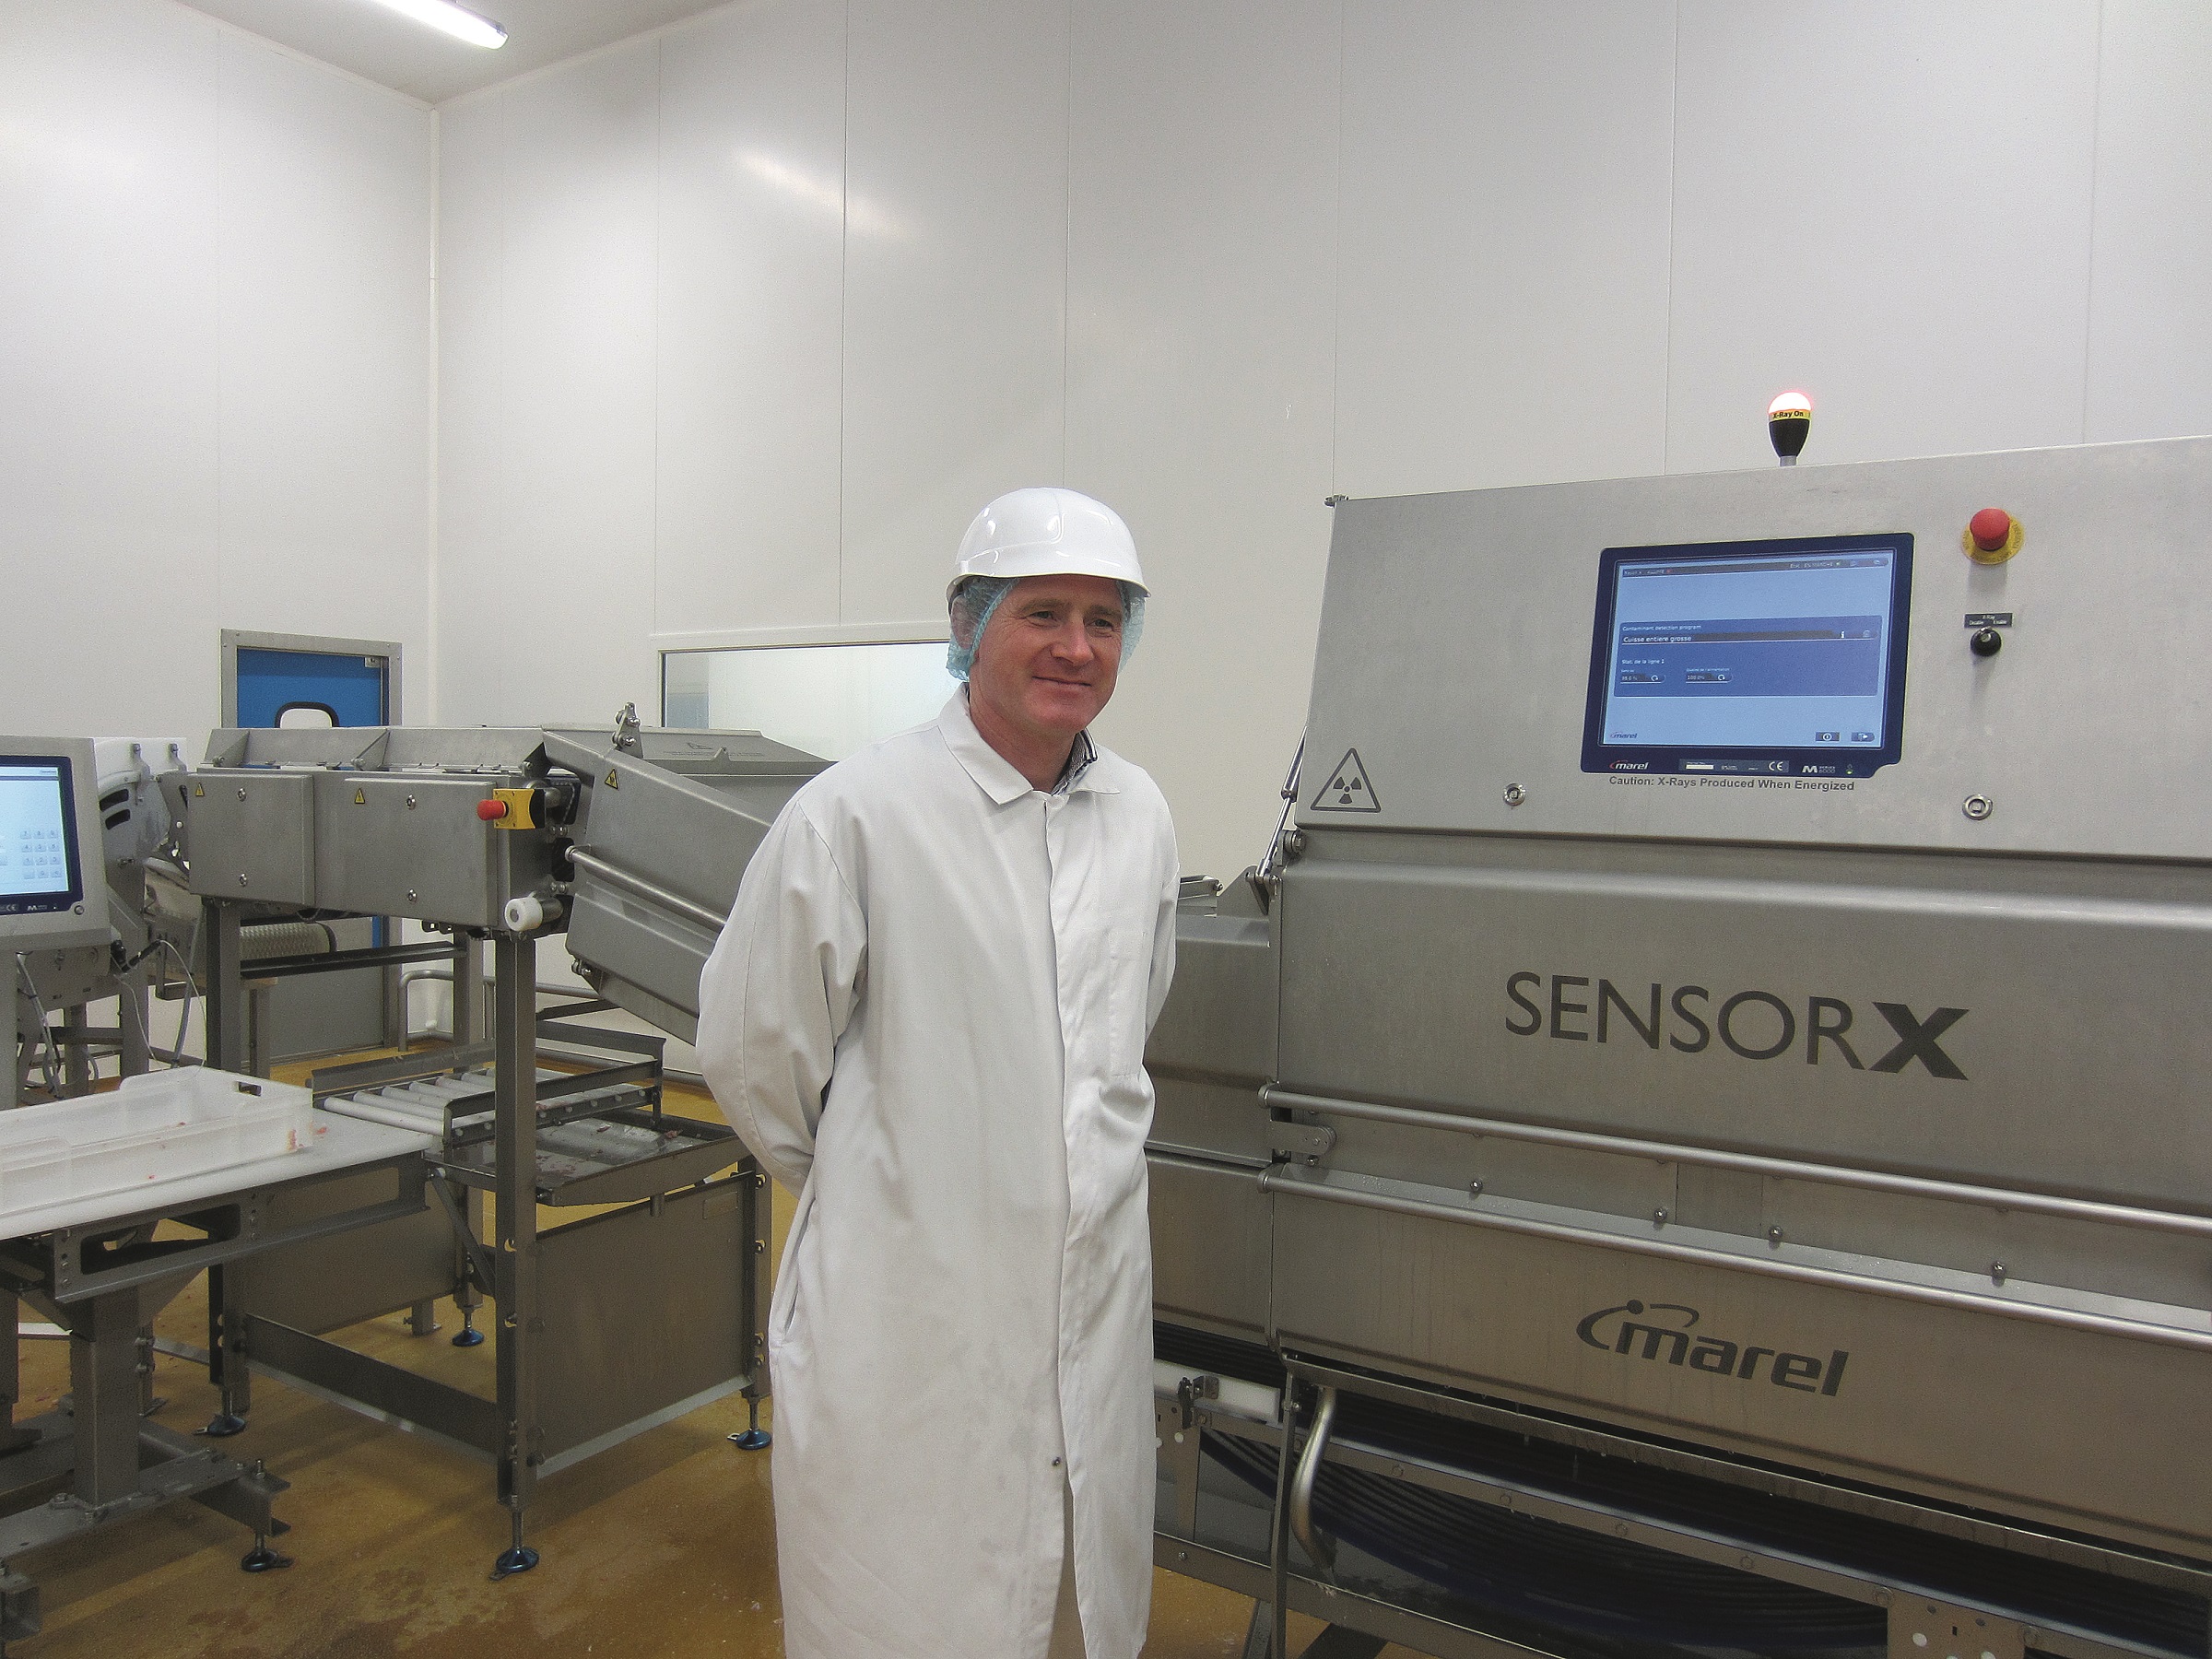 SensorX garantiza productos avícolas deshuesados a Boscher